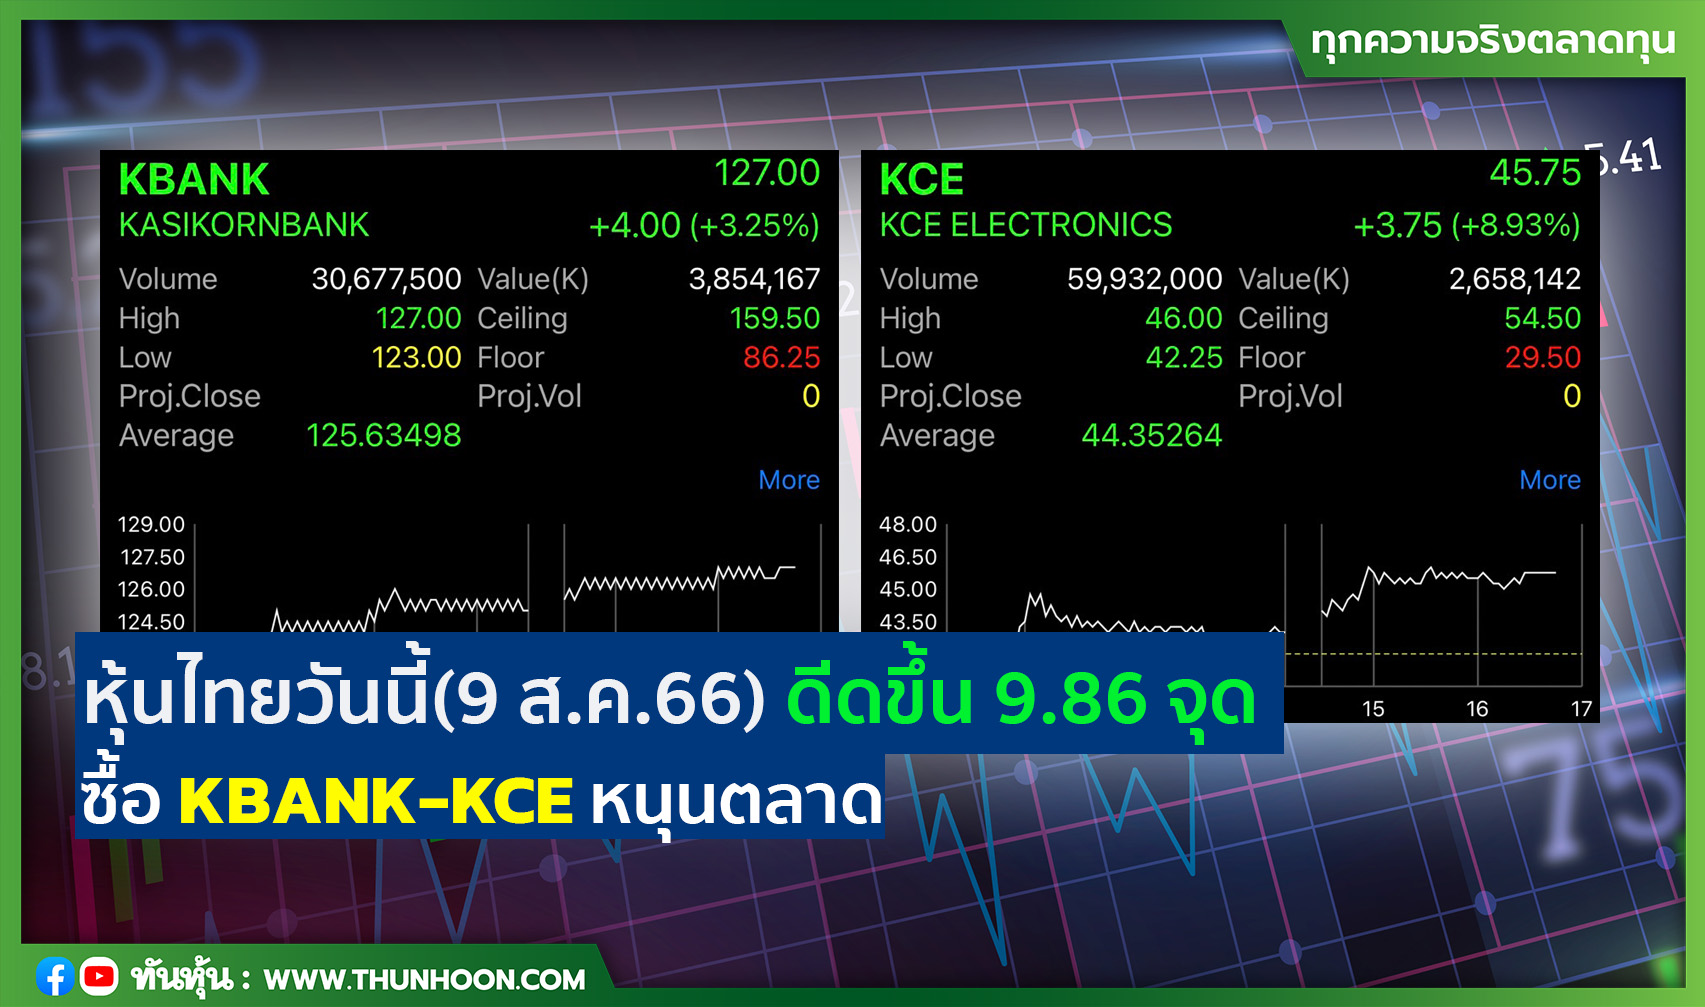 หุ้นไทยวันนี้(9 ส.ค.66) ดีดขึ้น 9.86 จุด ซื้อ KBANK-KCE หนุนตลาด 